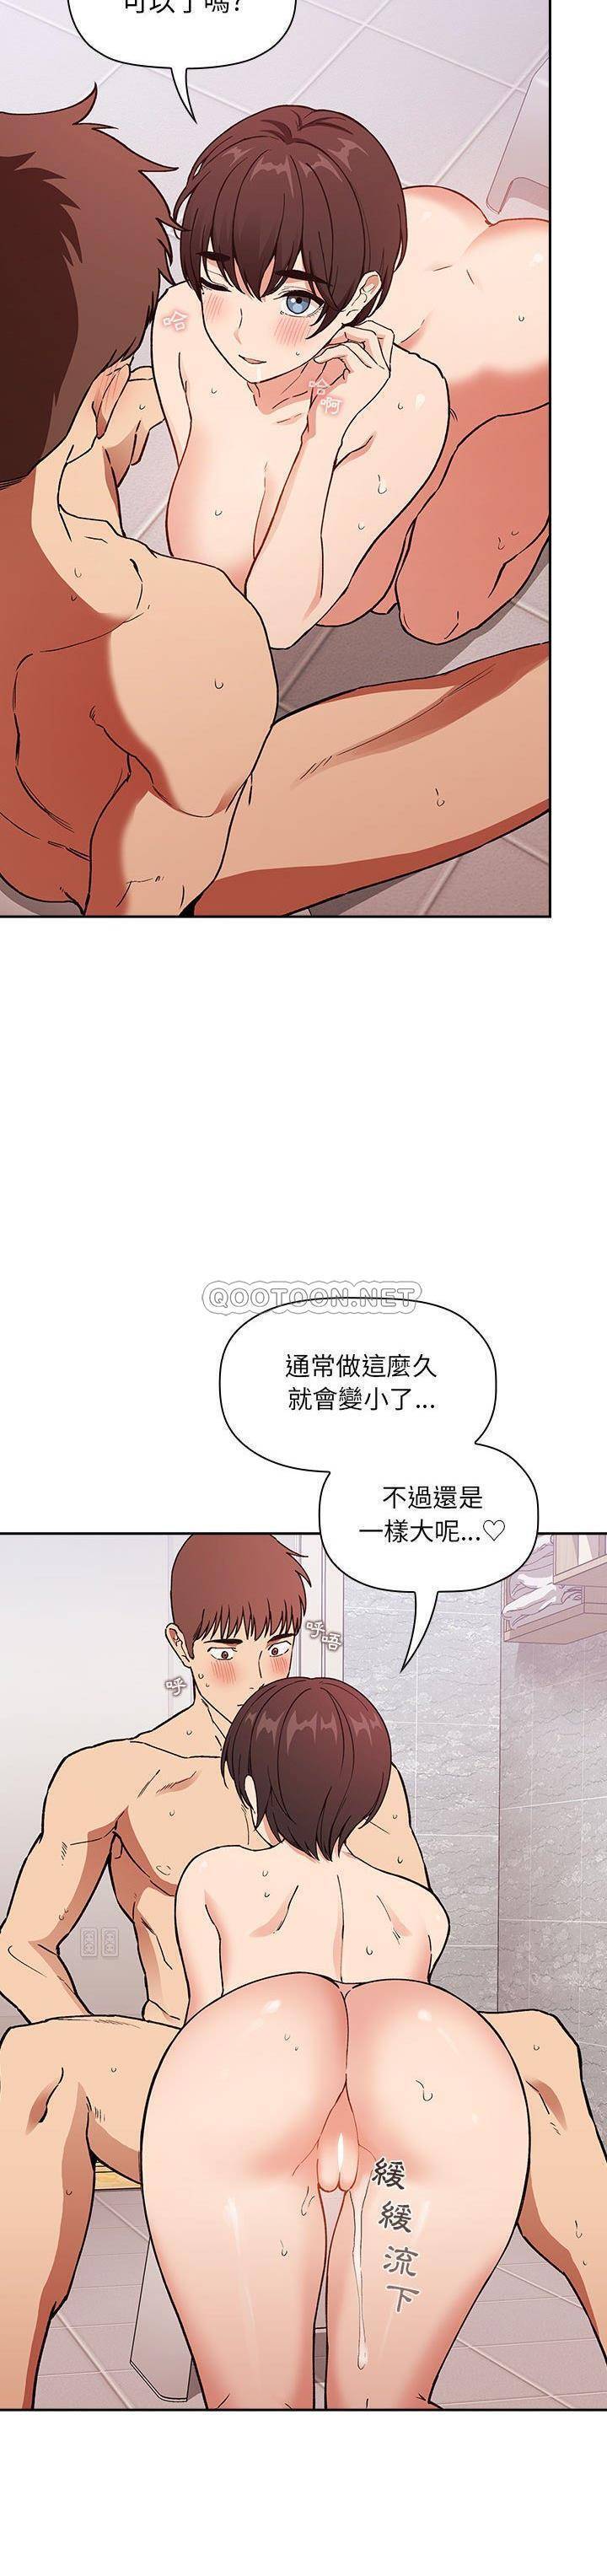 韩国污漫画 BJ的夢幻直播 第33话 4